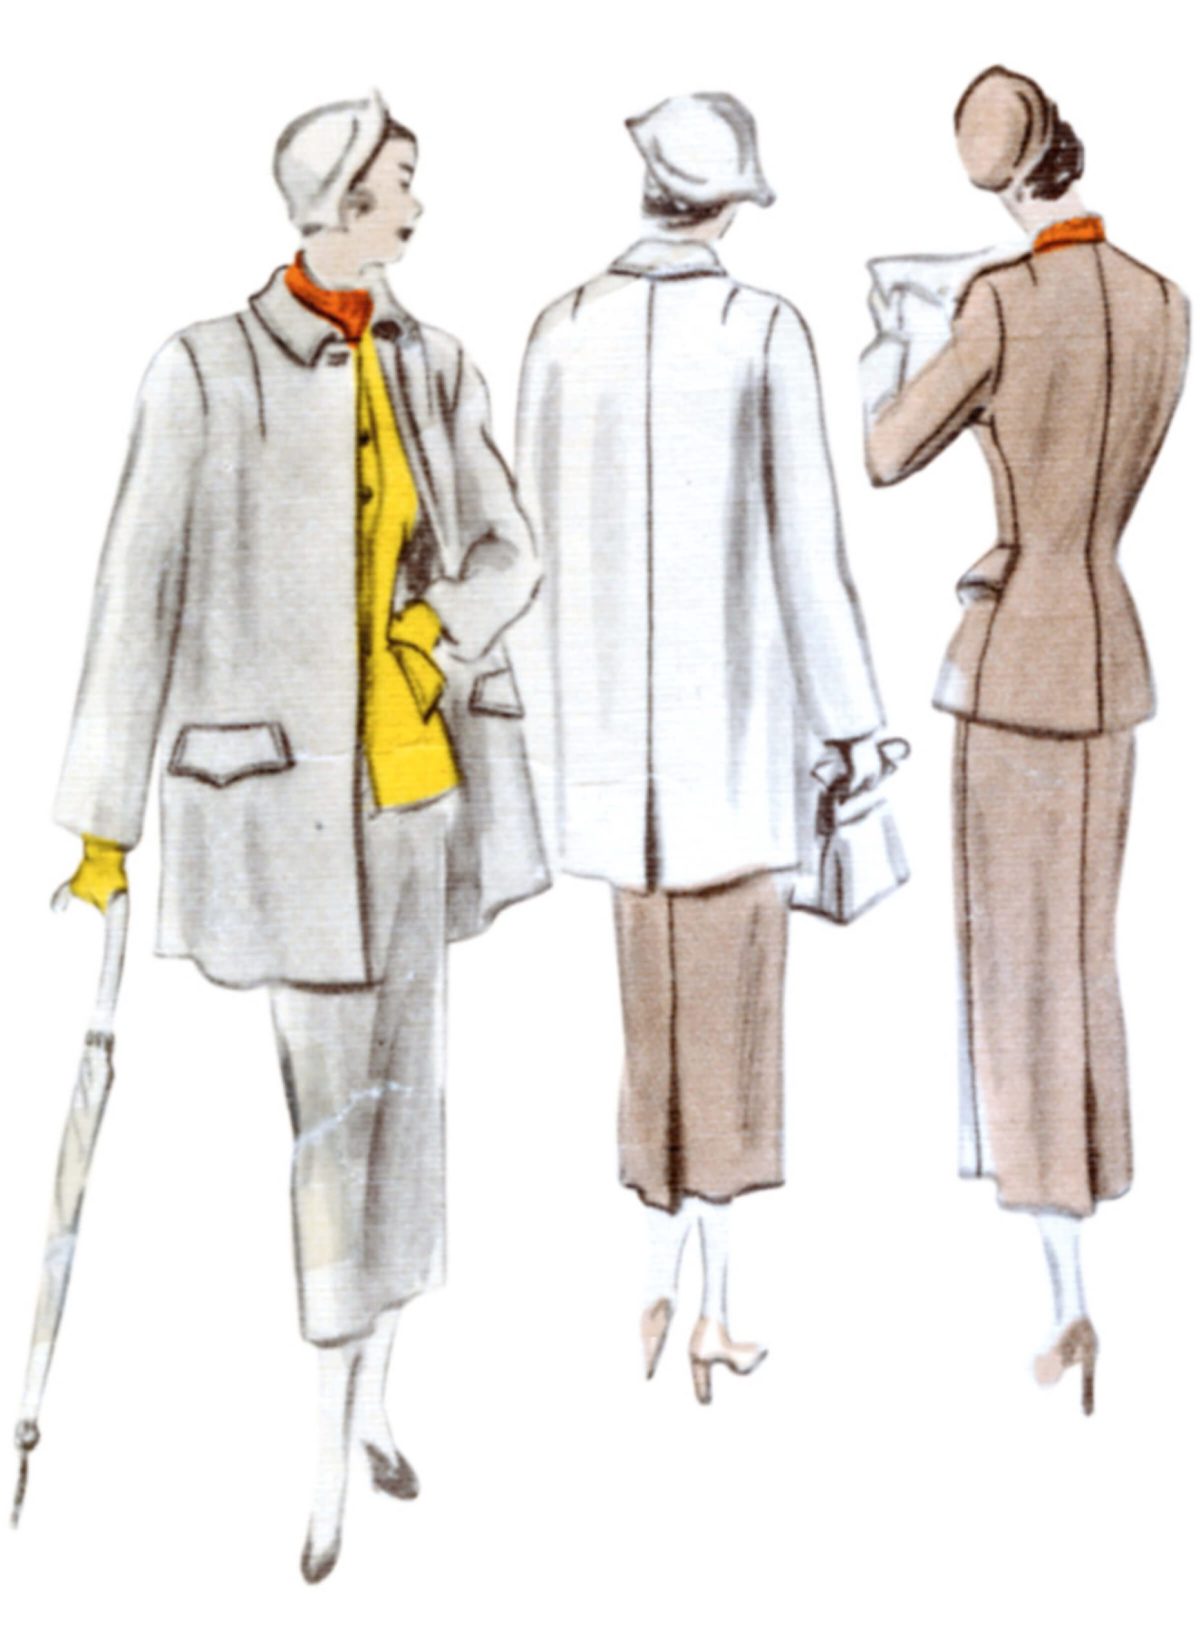 Vogue Patterns V1932 Misses' Vintage Suit and Coat